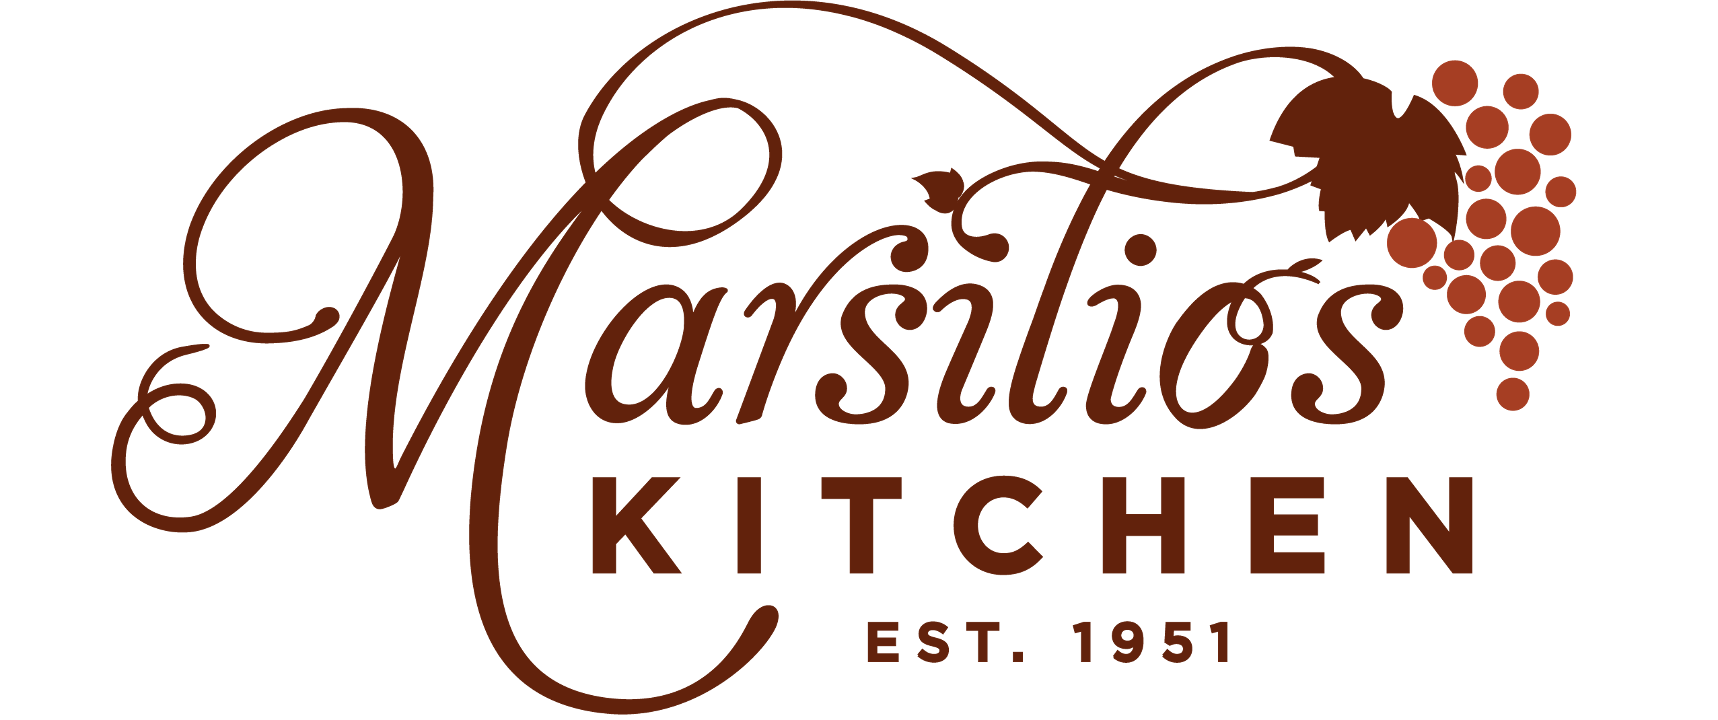 Marsilio's Kitchen logo